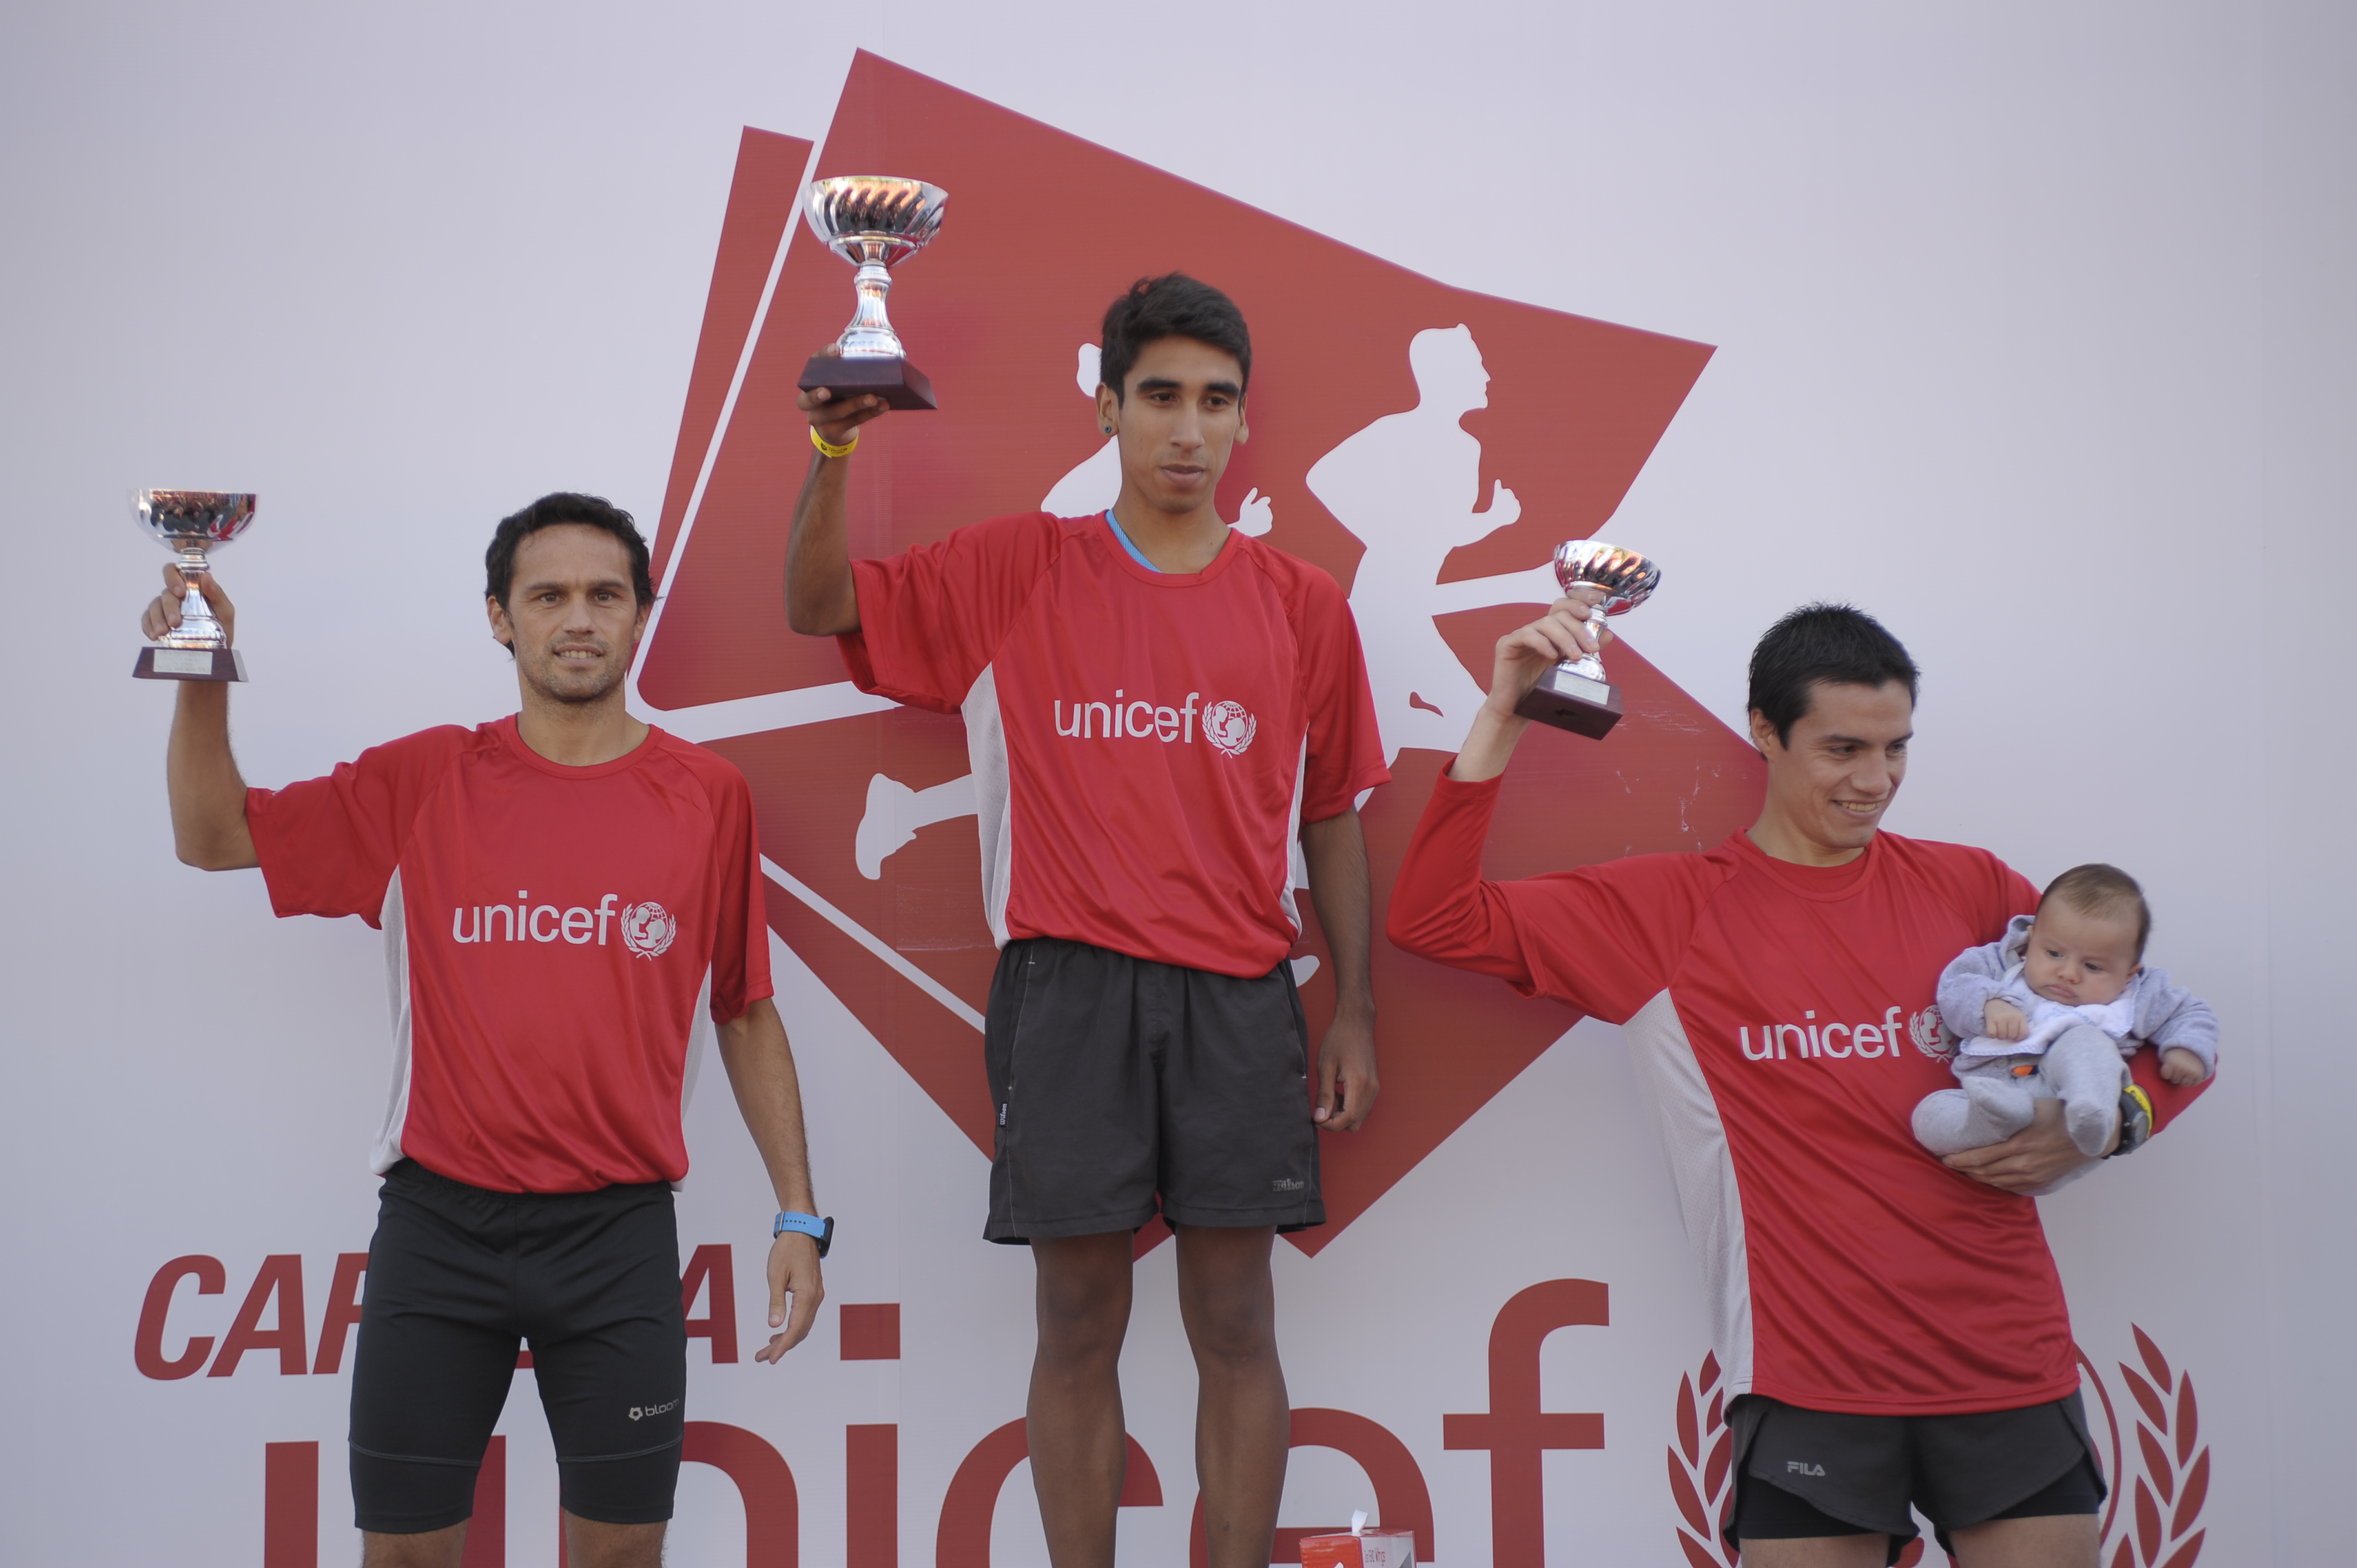 Carrera 10k UNICEF 2016 Fotos resultados locos por correr 02